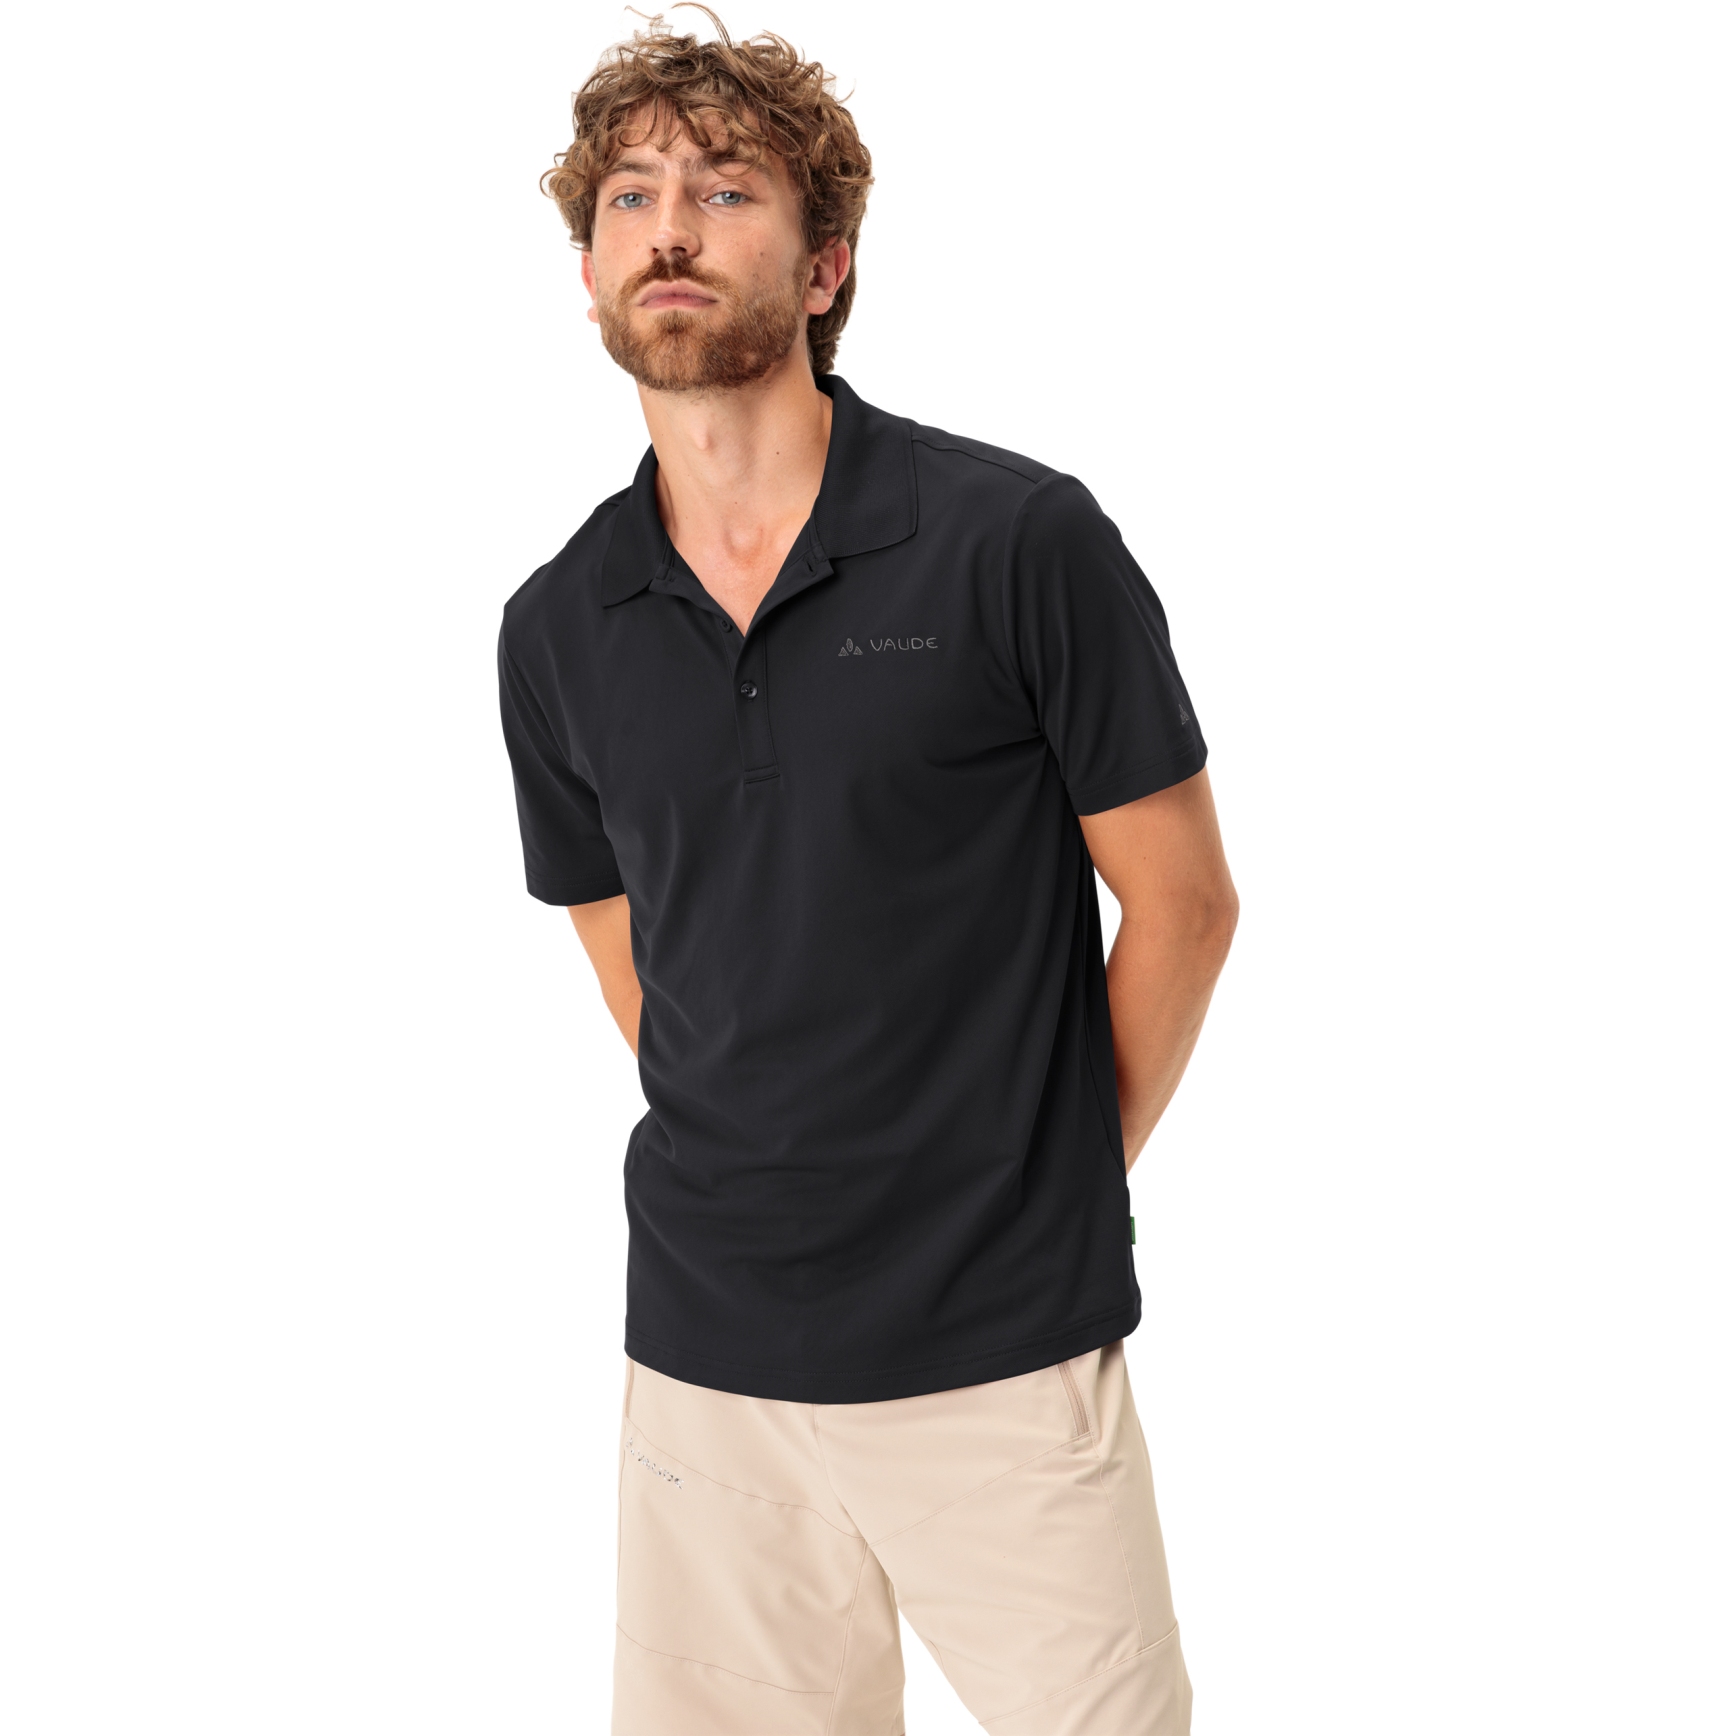 Produktbild von Vaude Essential Polo Shirt Herren - schwarz